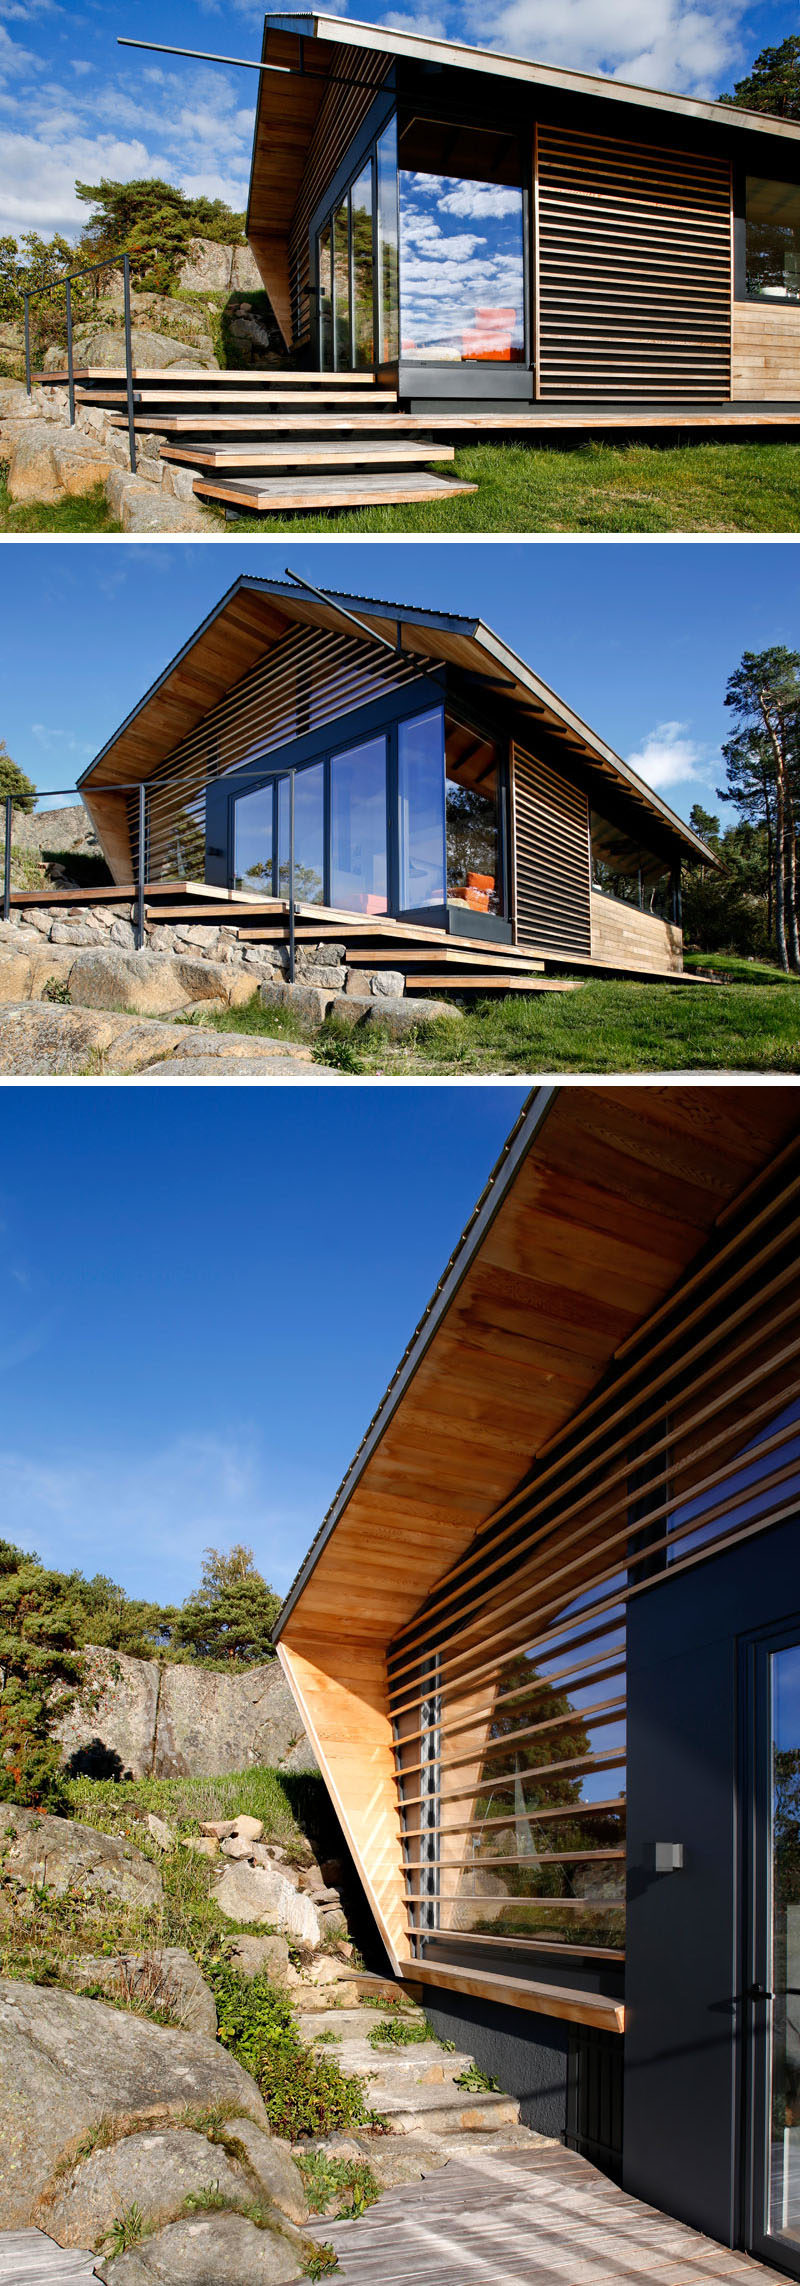  Эта современная каюта облицована кедровым деревом, часть которого частично покрывает окна, позволяя солнечному свету проникать внутрь. #ModernCabin # Архитектура 